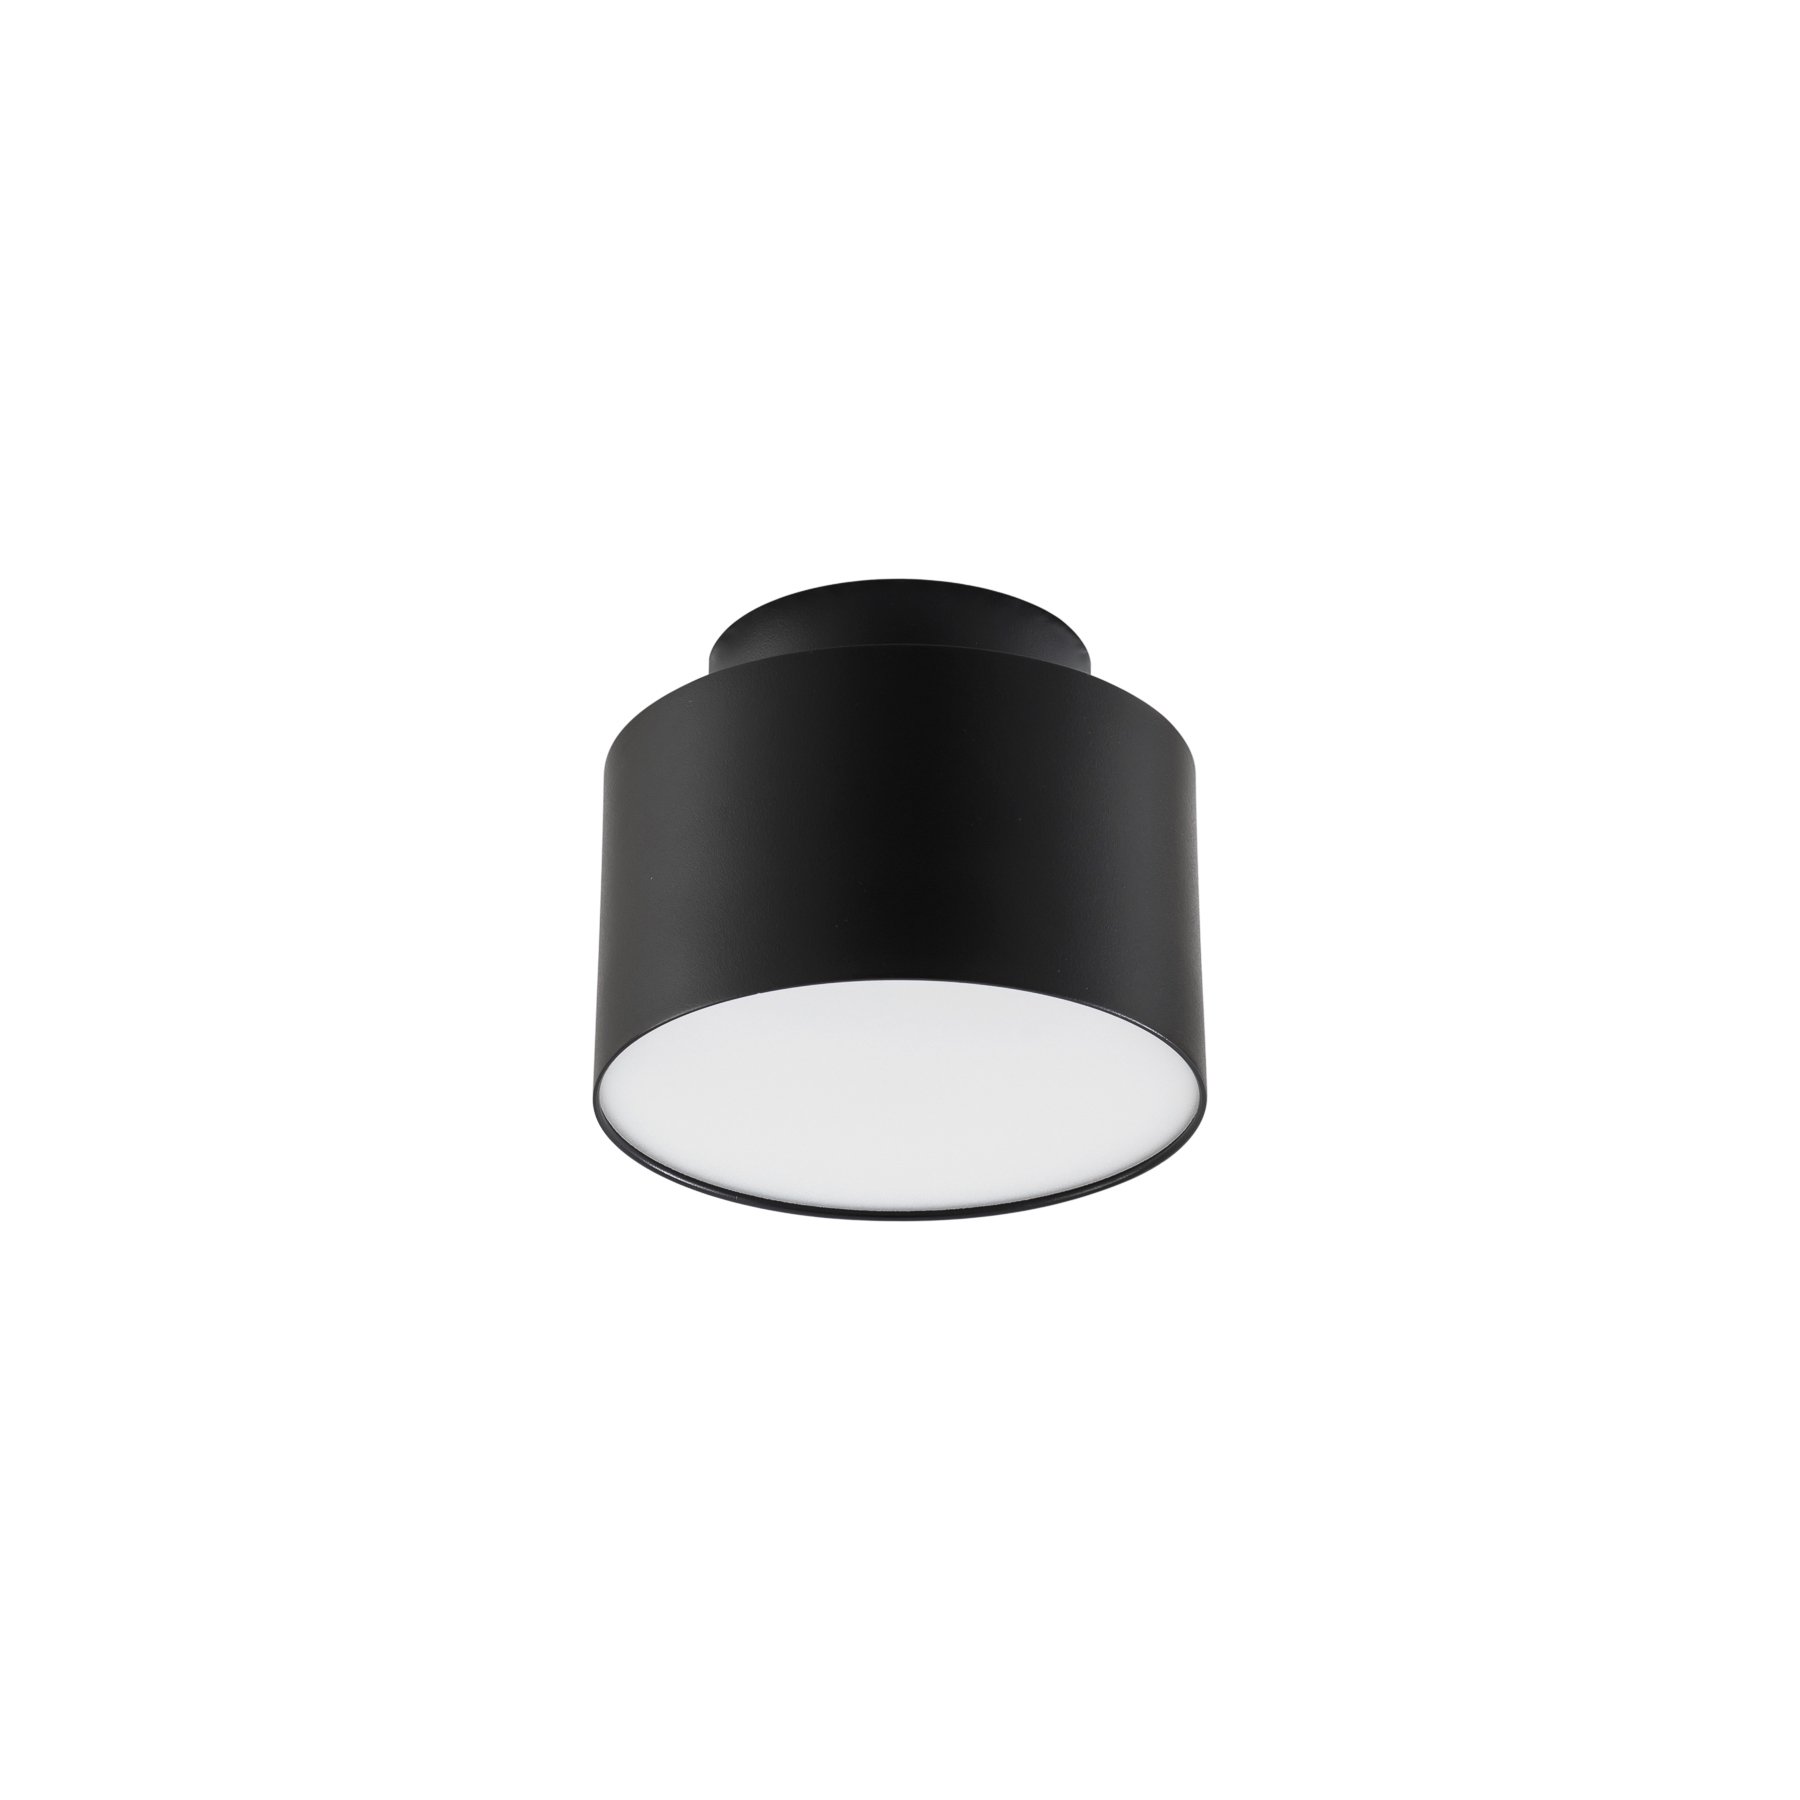 Lindby spot LED Nivoria, Ø 11 cm, noir sable, set de 4 pièces